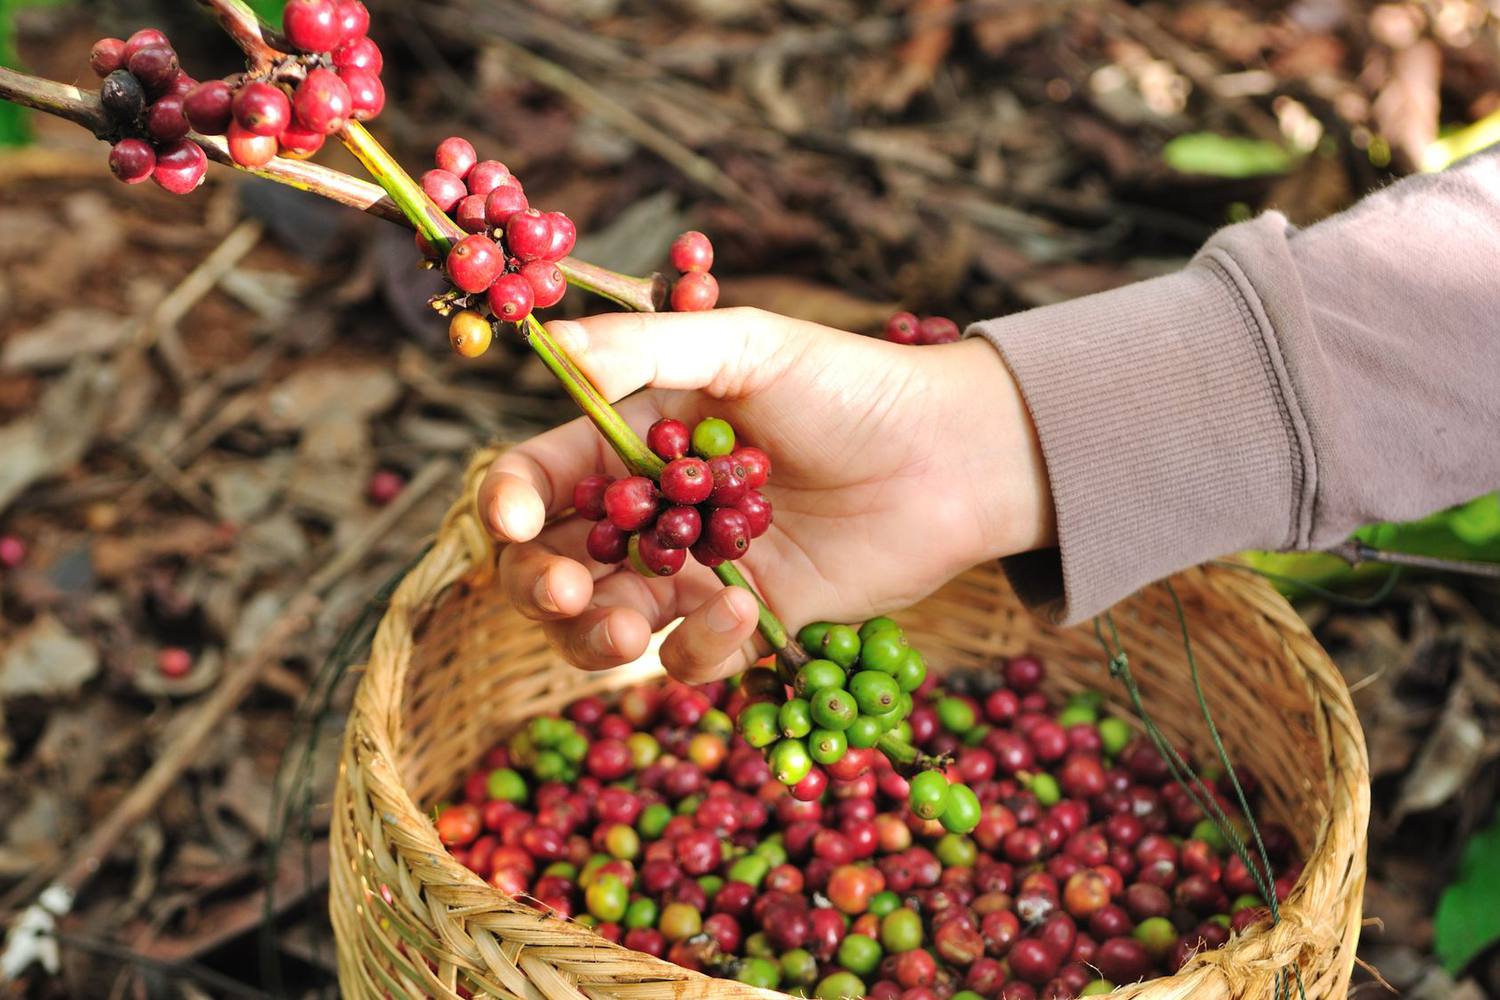 ハワイ土産に人気のコナコーヒーとは 味の特徴とおすすめの農園 海外旅行 日本国内旅行のおすすめ情報 Veltra Zine ベルトラ